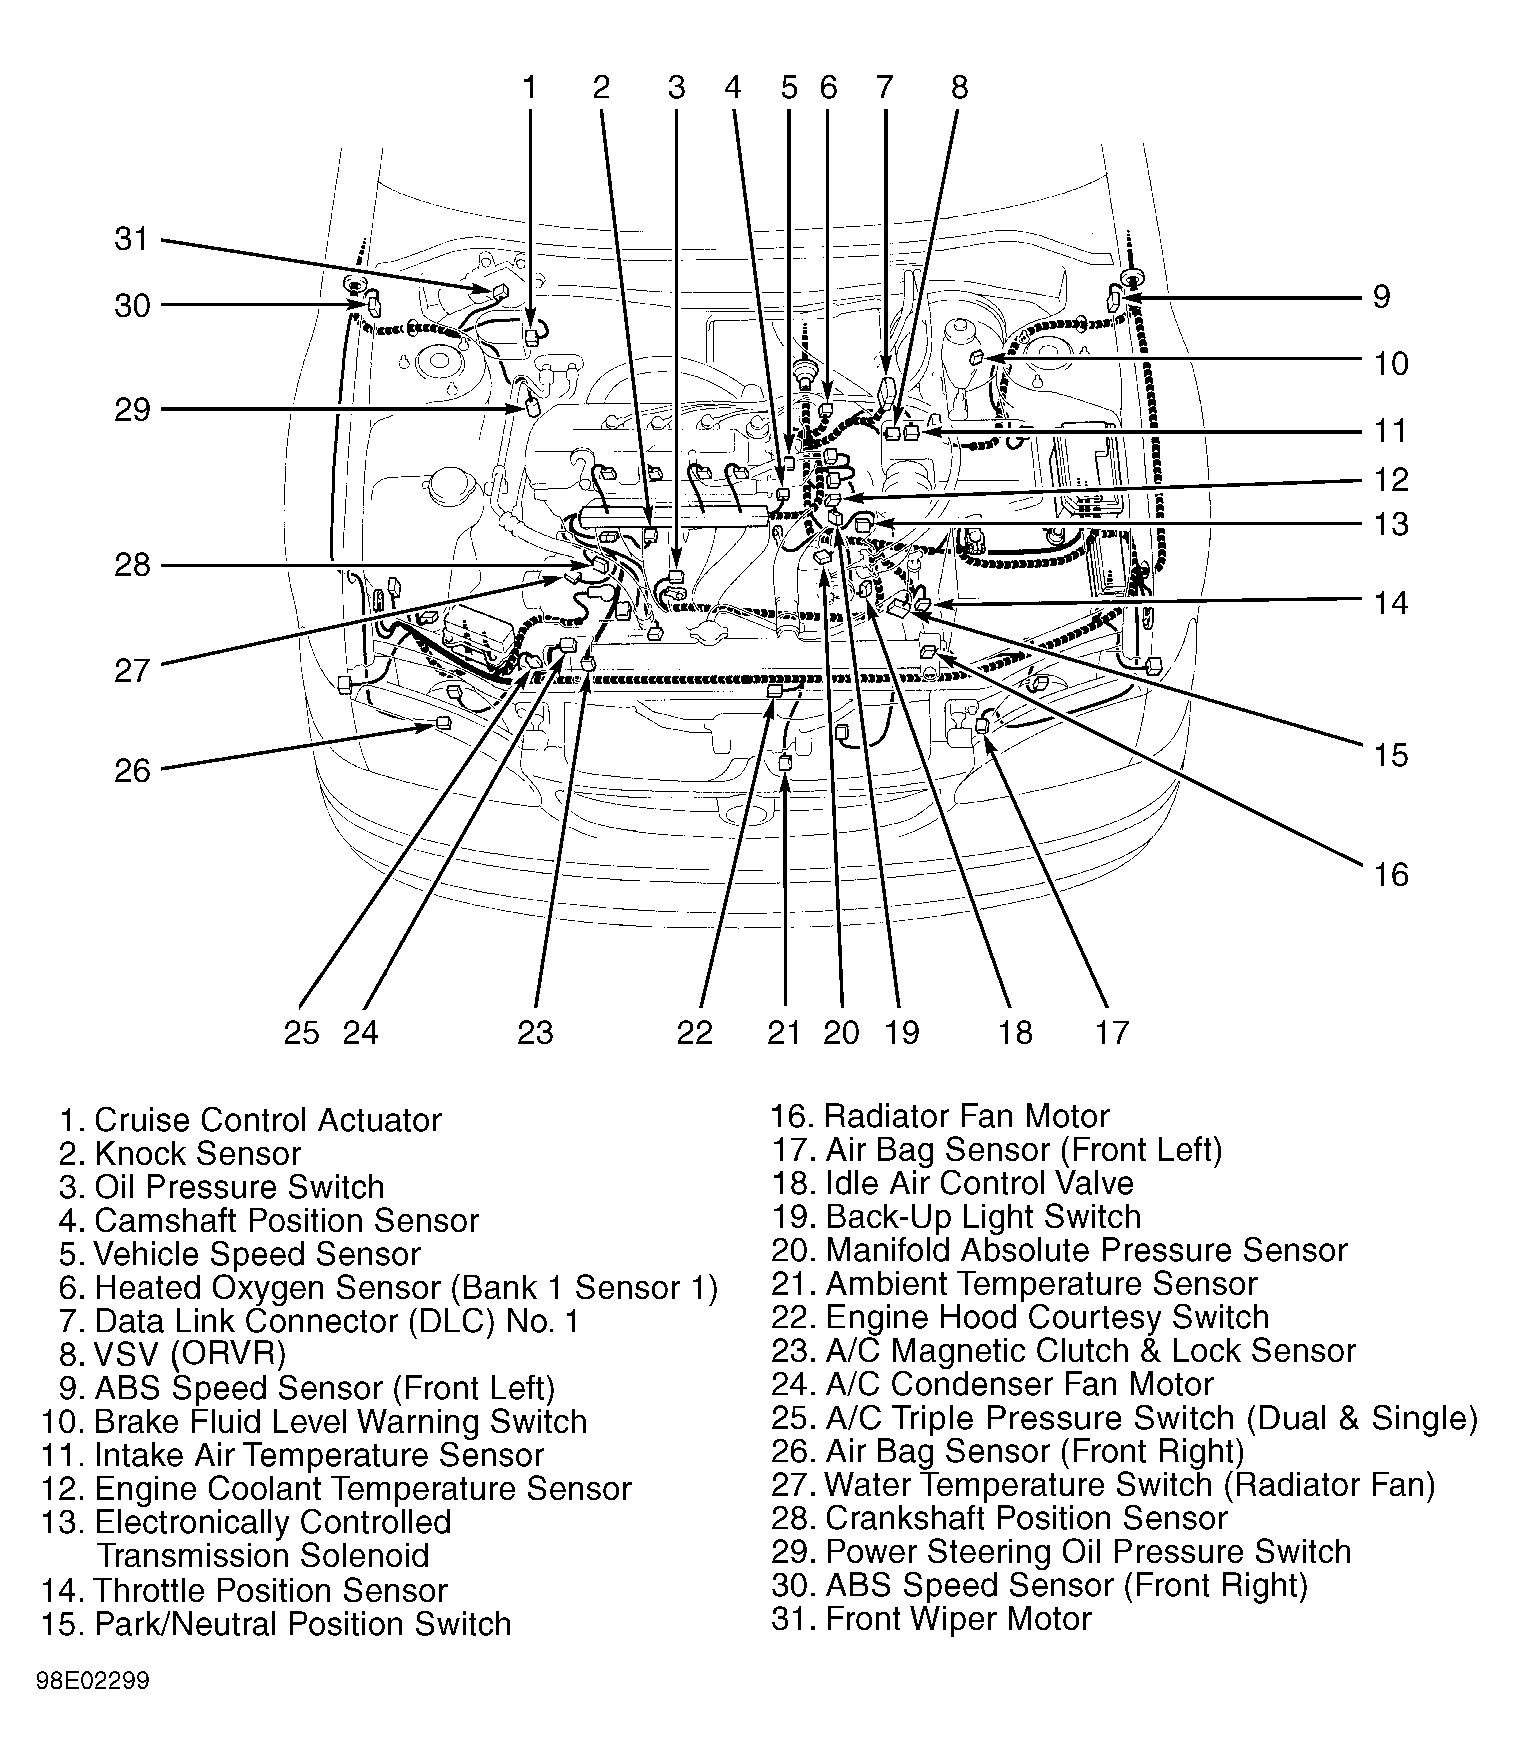 1994 toyota Camry Engine Diagram toyota Supra Engine Diagram toyota Wiring Diagrams Instructions Of 1994 toyota Camry Engine Diagram